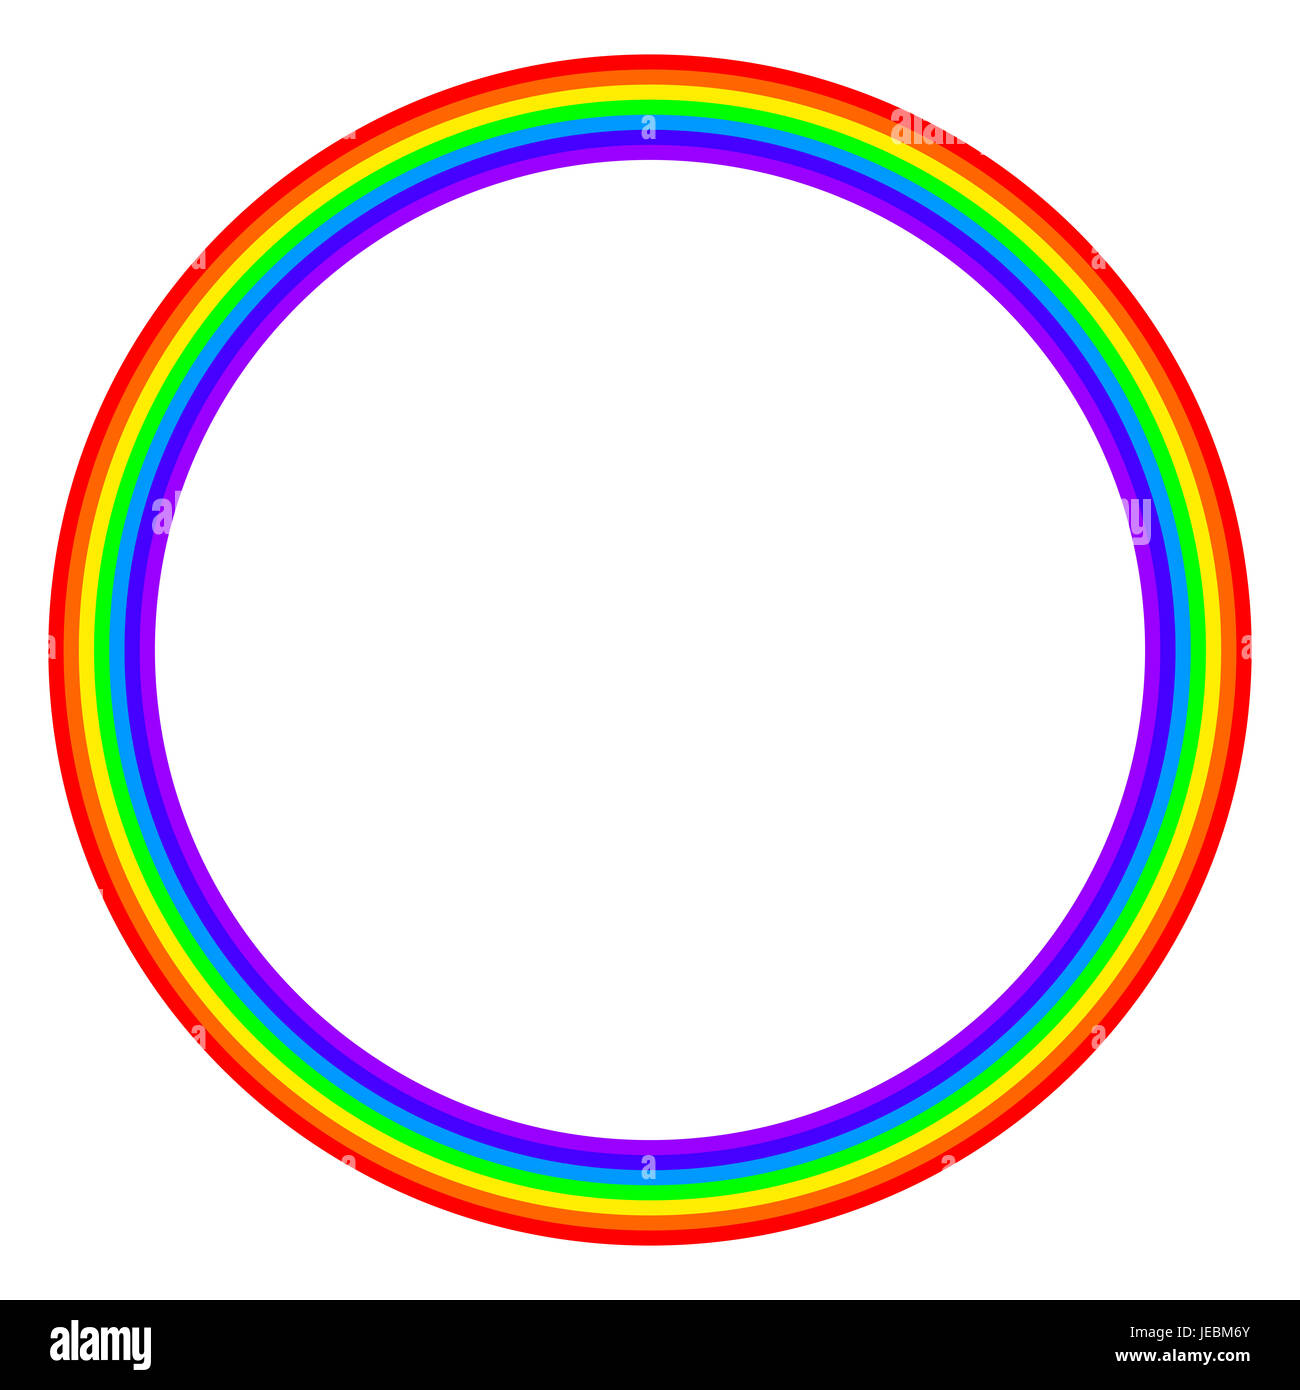 Cercle de couleur arc-en-ciel sur fond blanc. L'anneau avec bandes arc-en-ciel en sept couleurs principales du spectre et la lumière visible. Banque D'Images